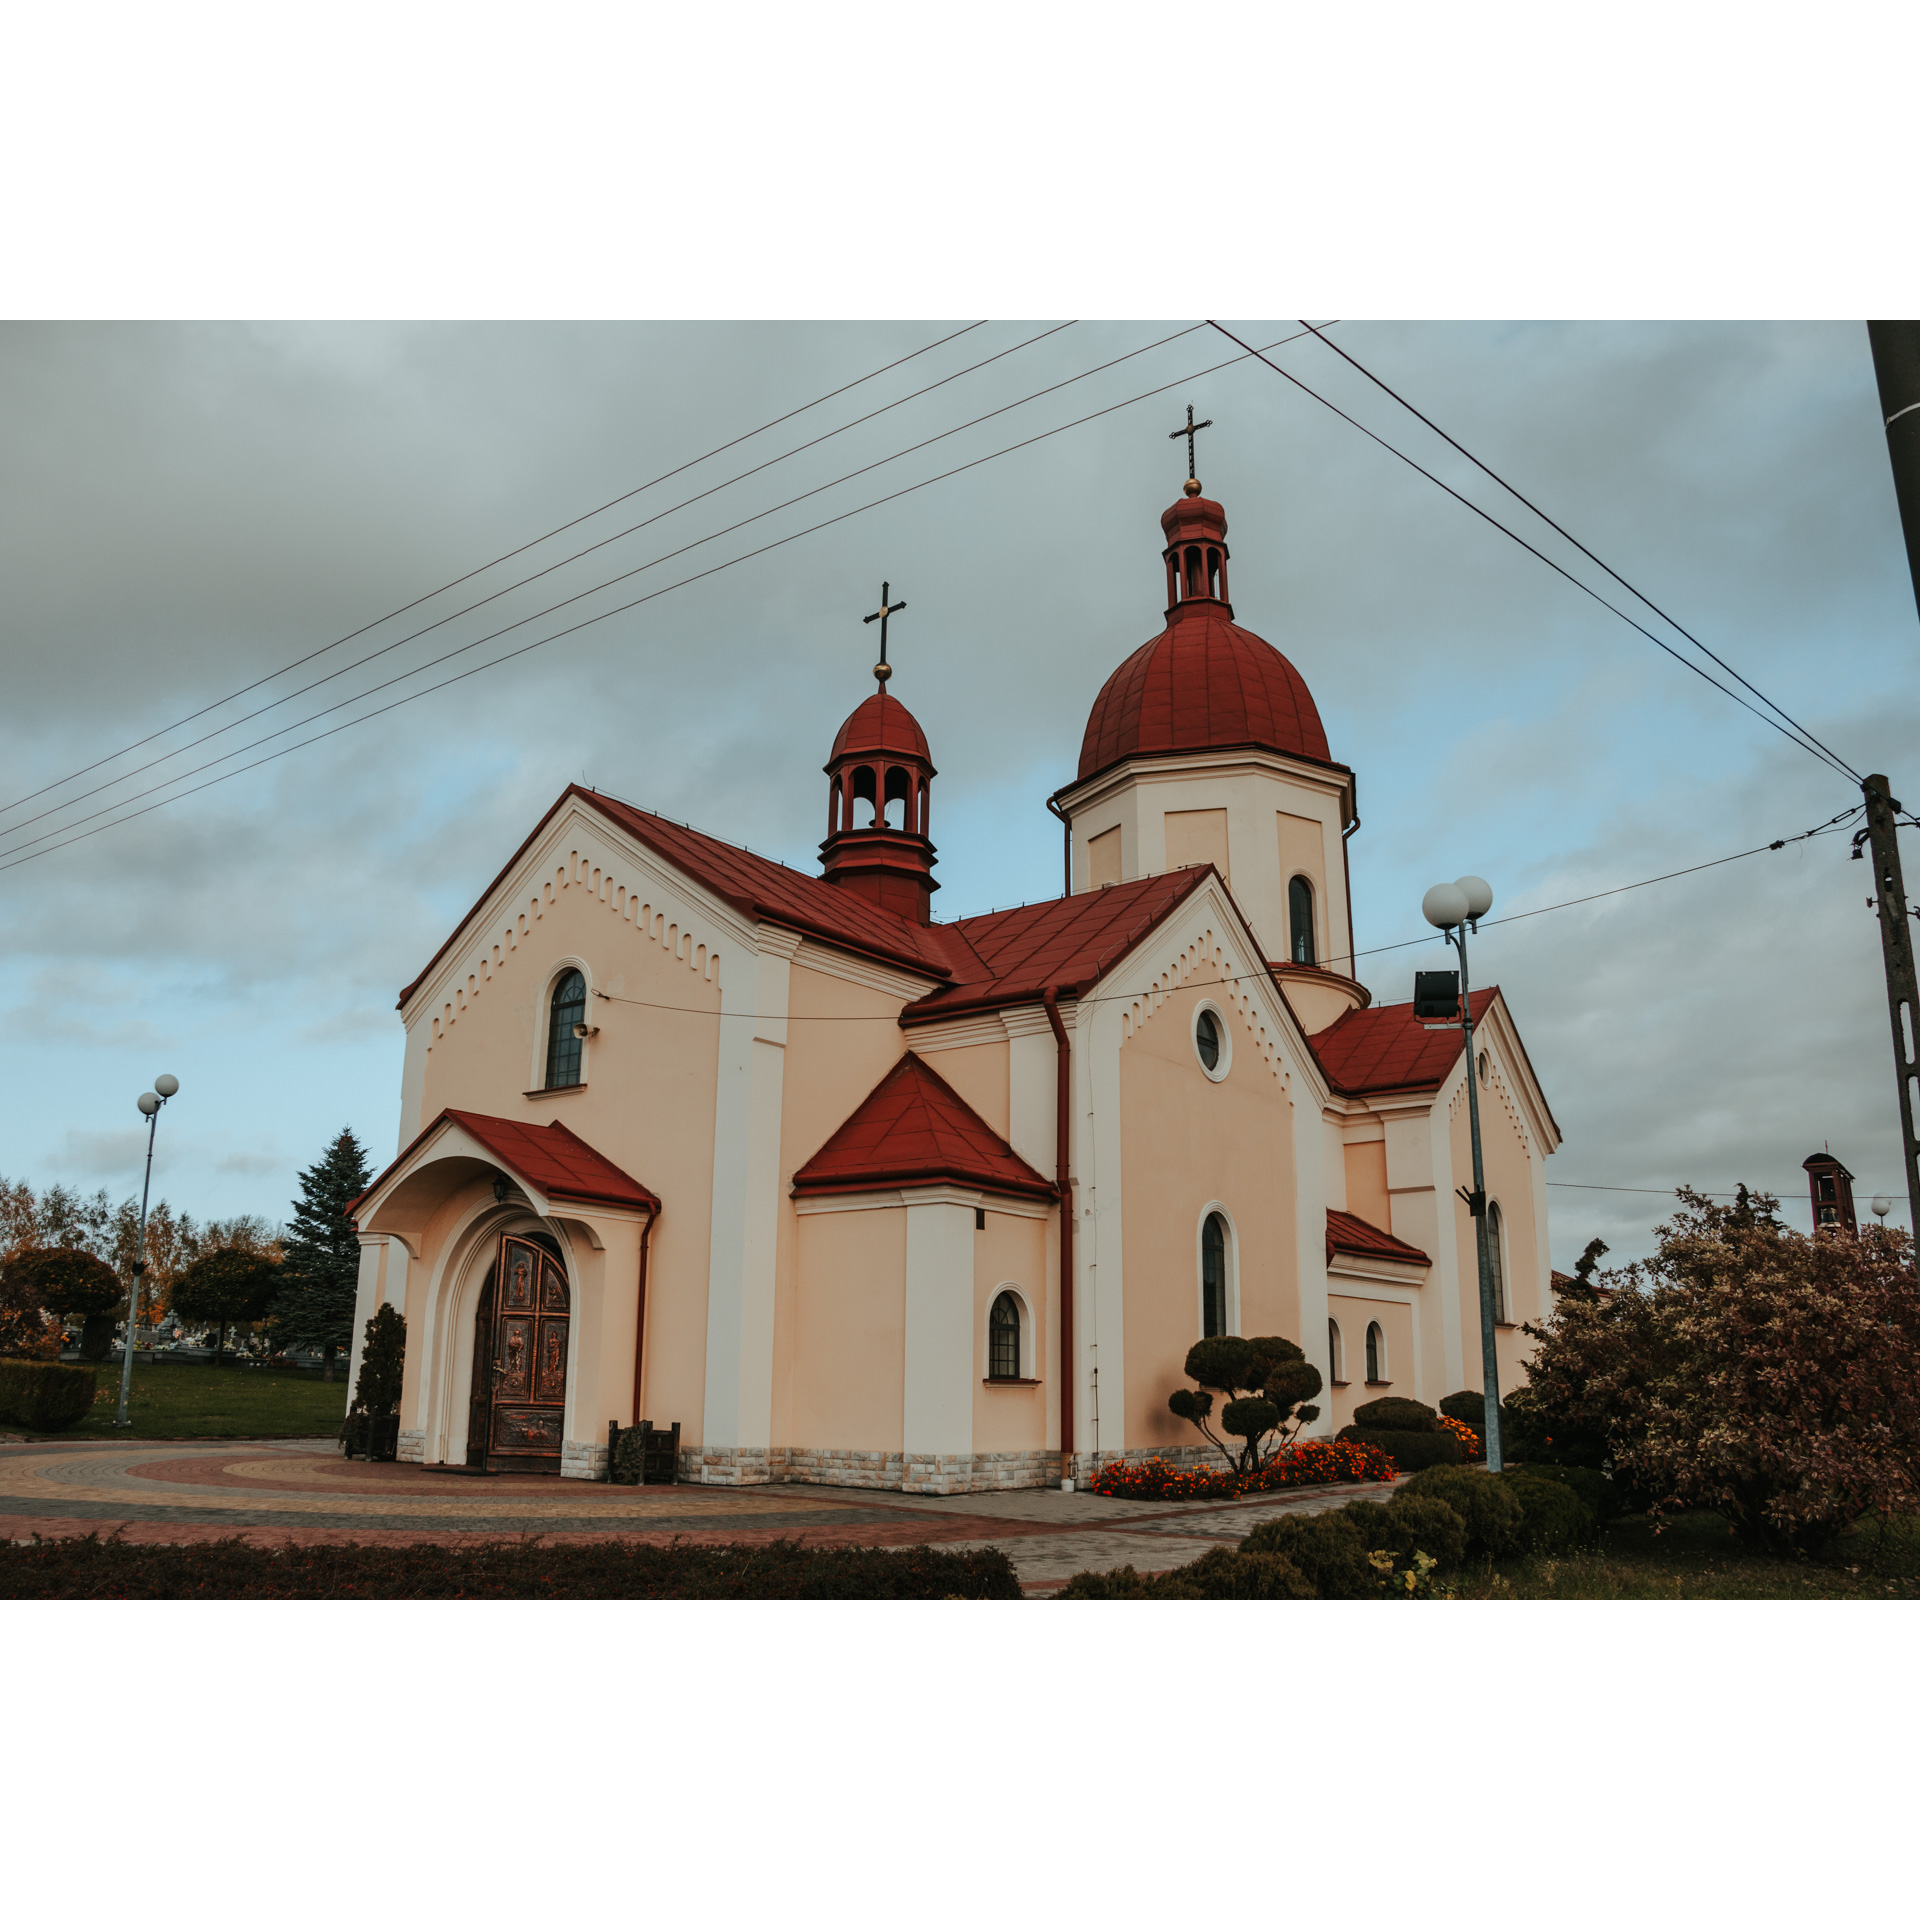 Jasnopomarańczowy kościół z czerwonym dachem i cmentarzem w tle